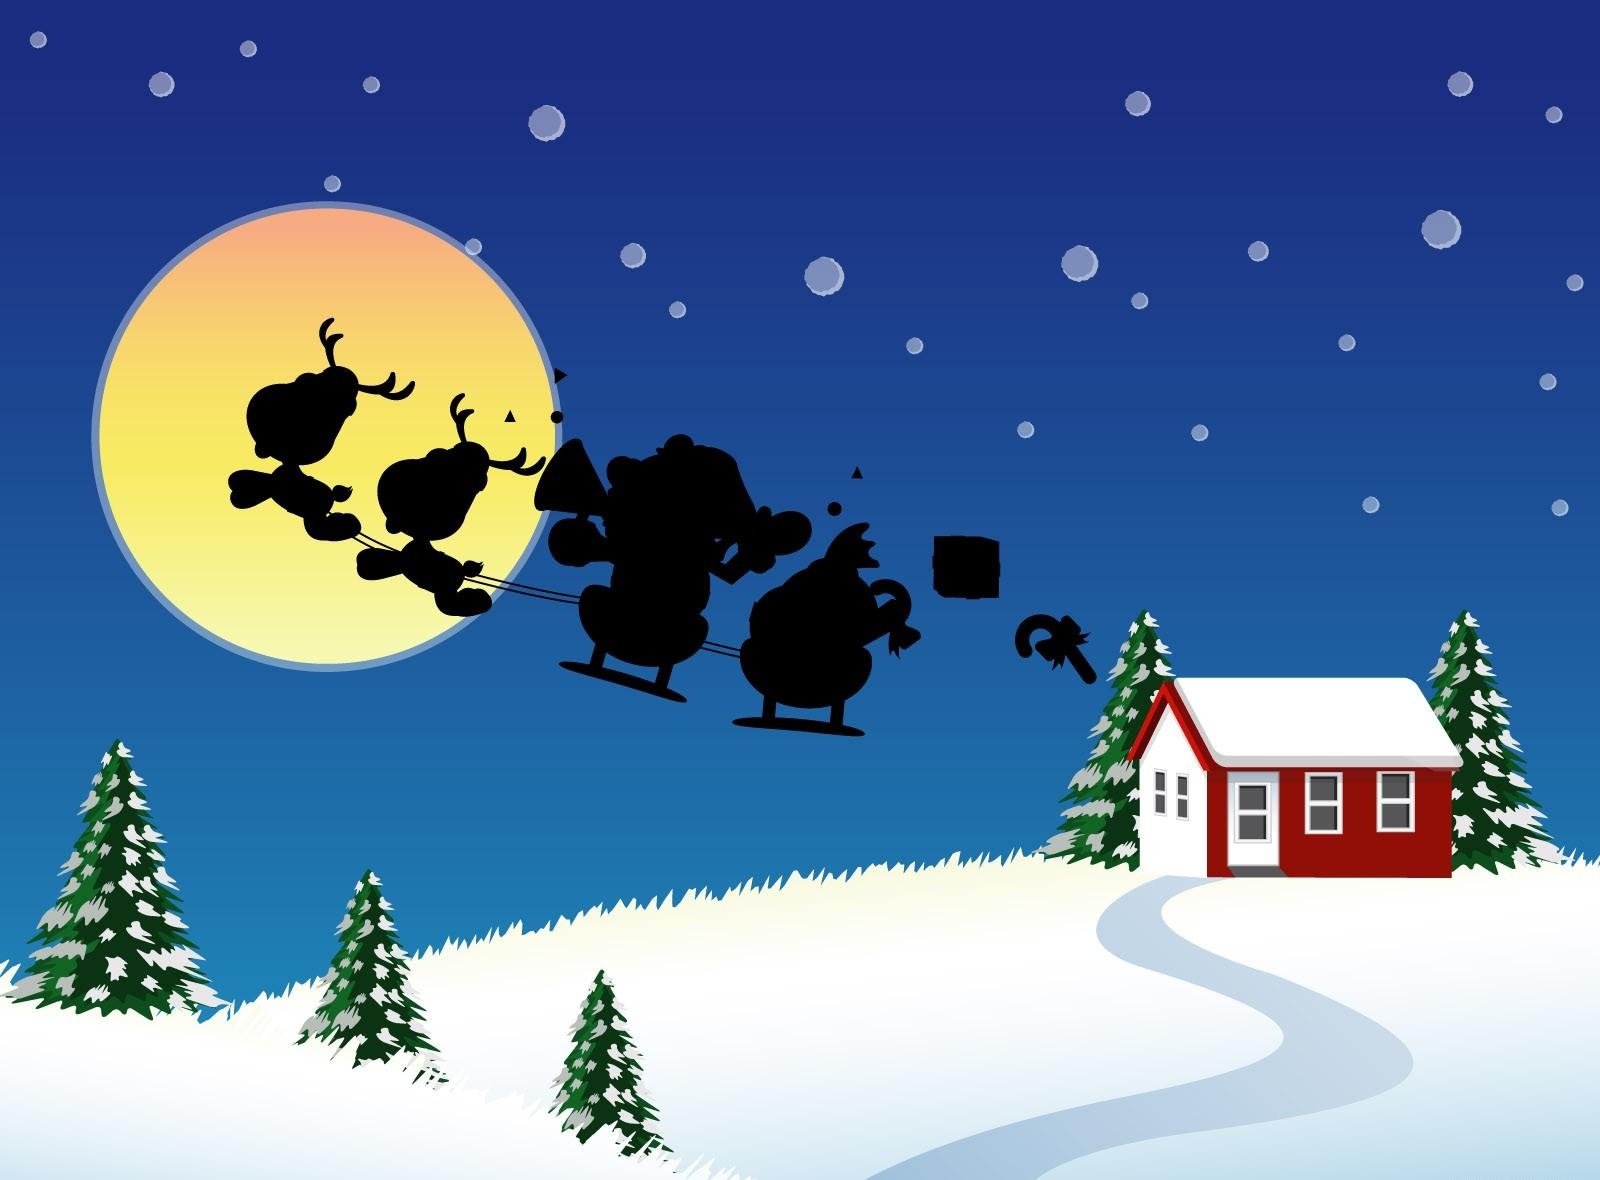 christmas, holidays, santa claus, moon, fir trees, house, flight, sleigh, sledge